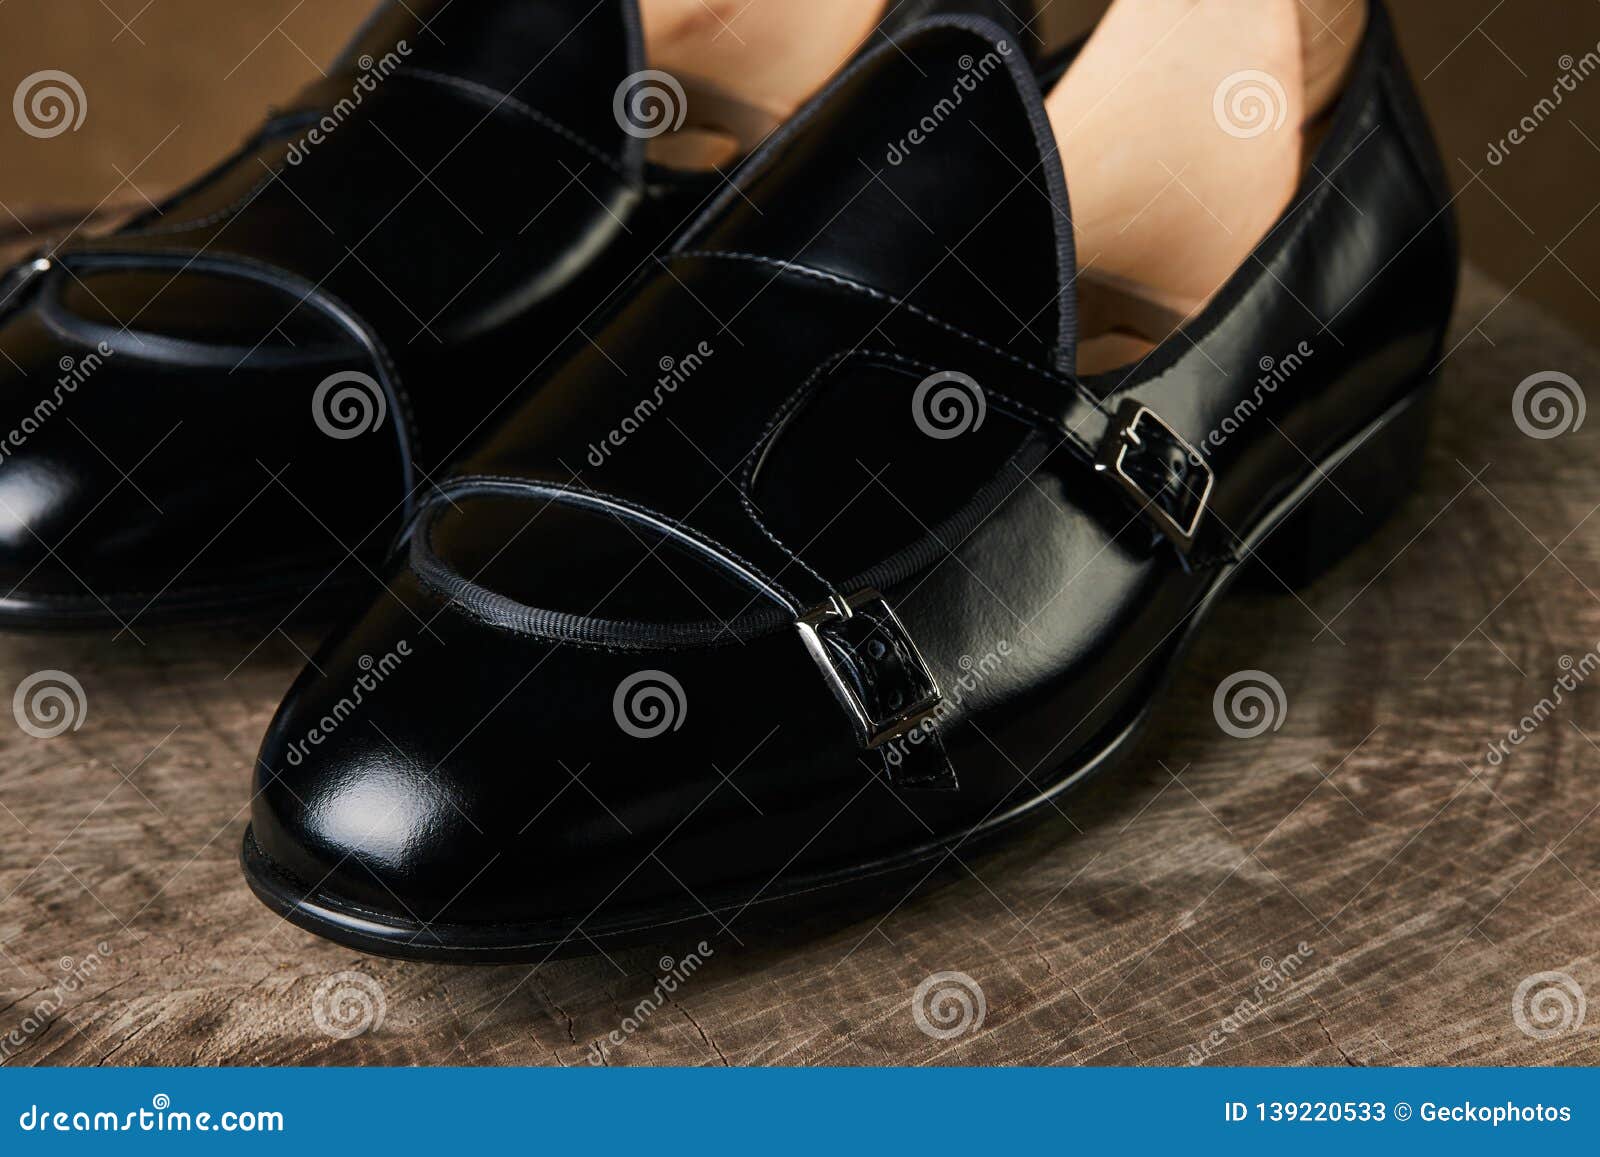 Lazo Y Un Par De Los Zapatos De Cuero Clásicos Hombre En Tocón De Madera Imagen de archivo - Imagen de fashionable, zapato: 139220533